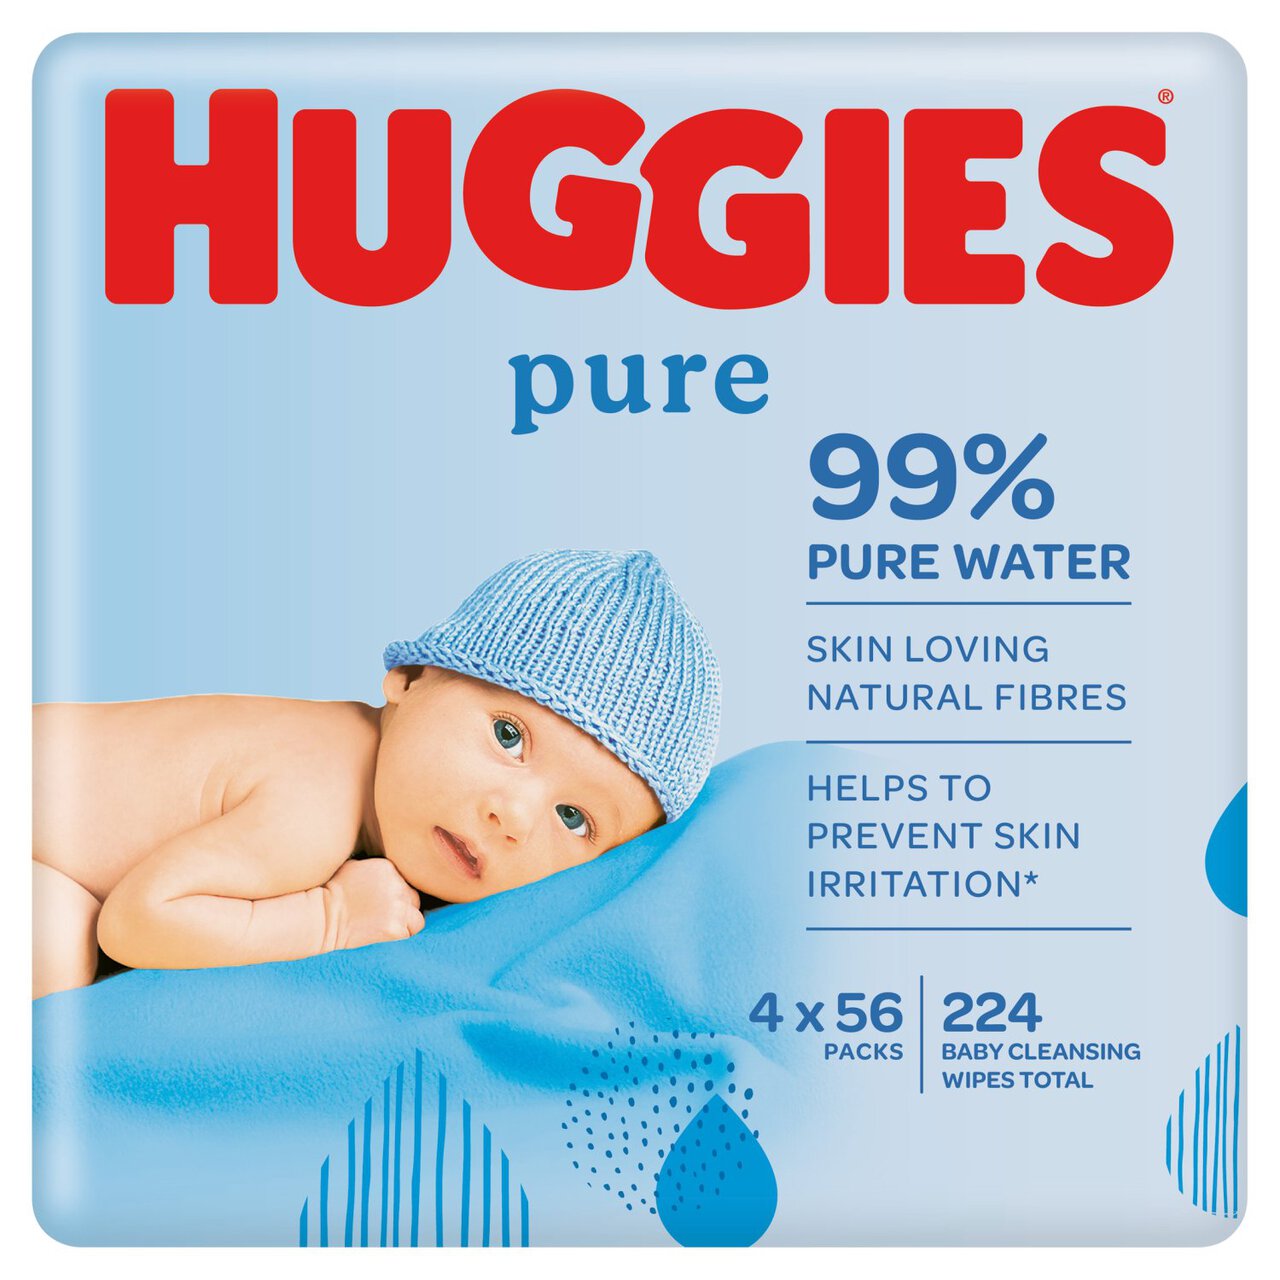 huggies 99 water